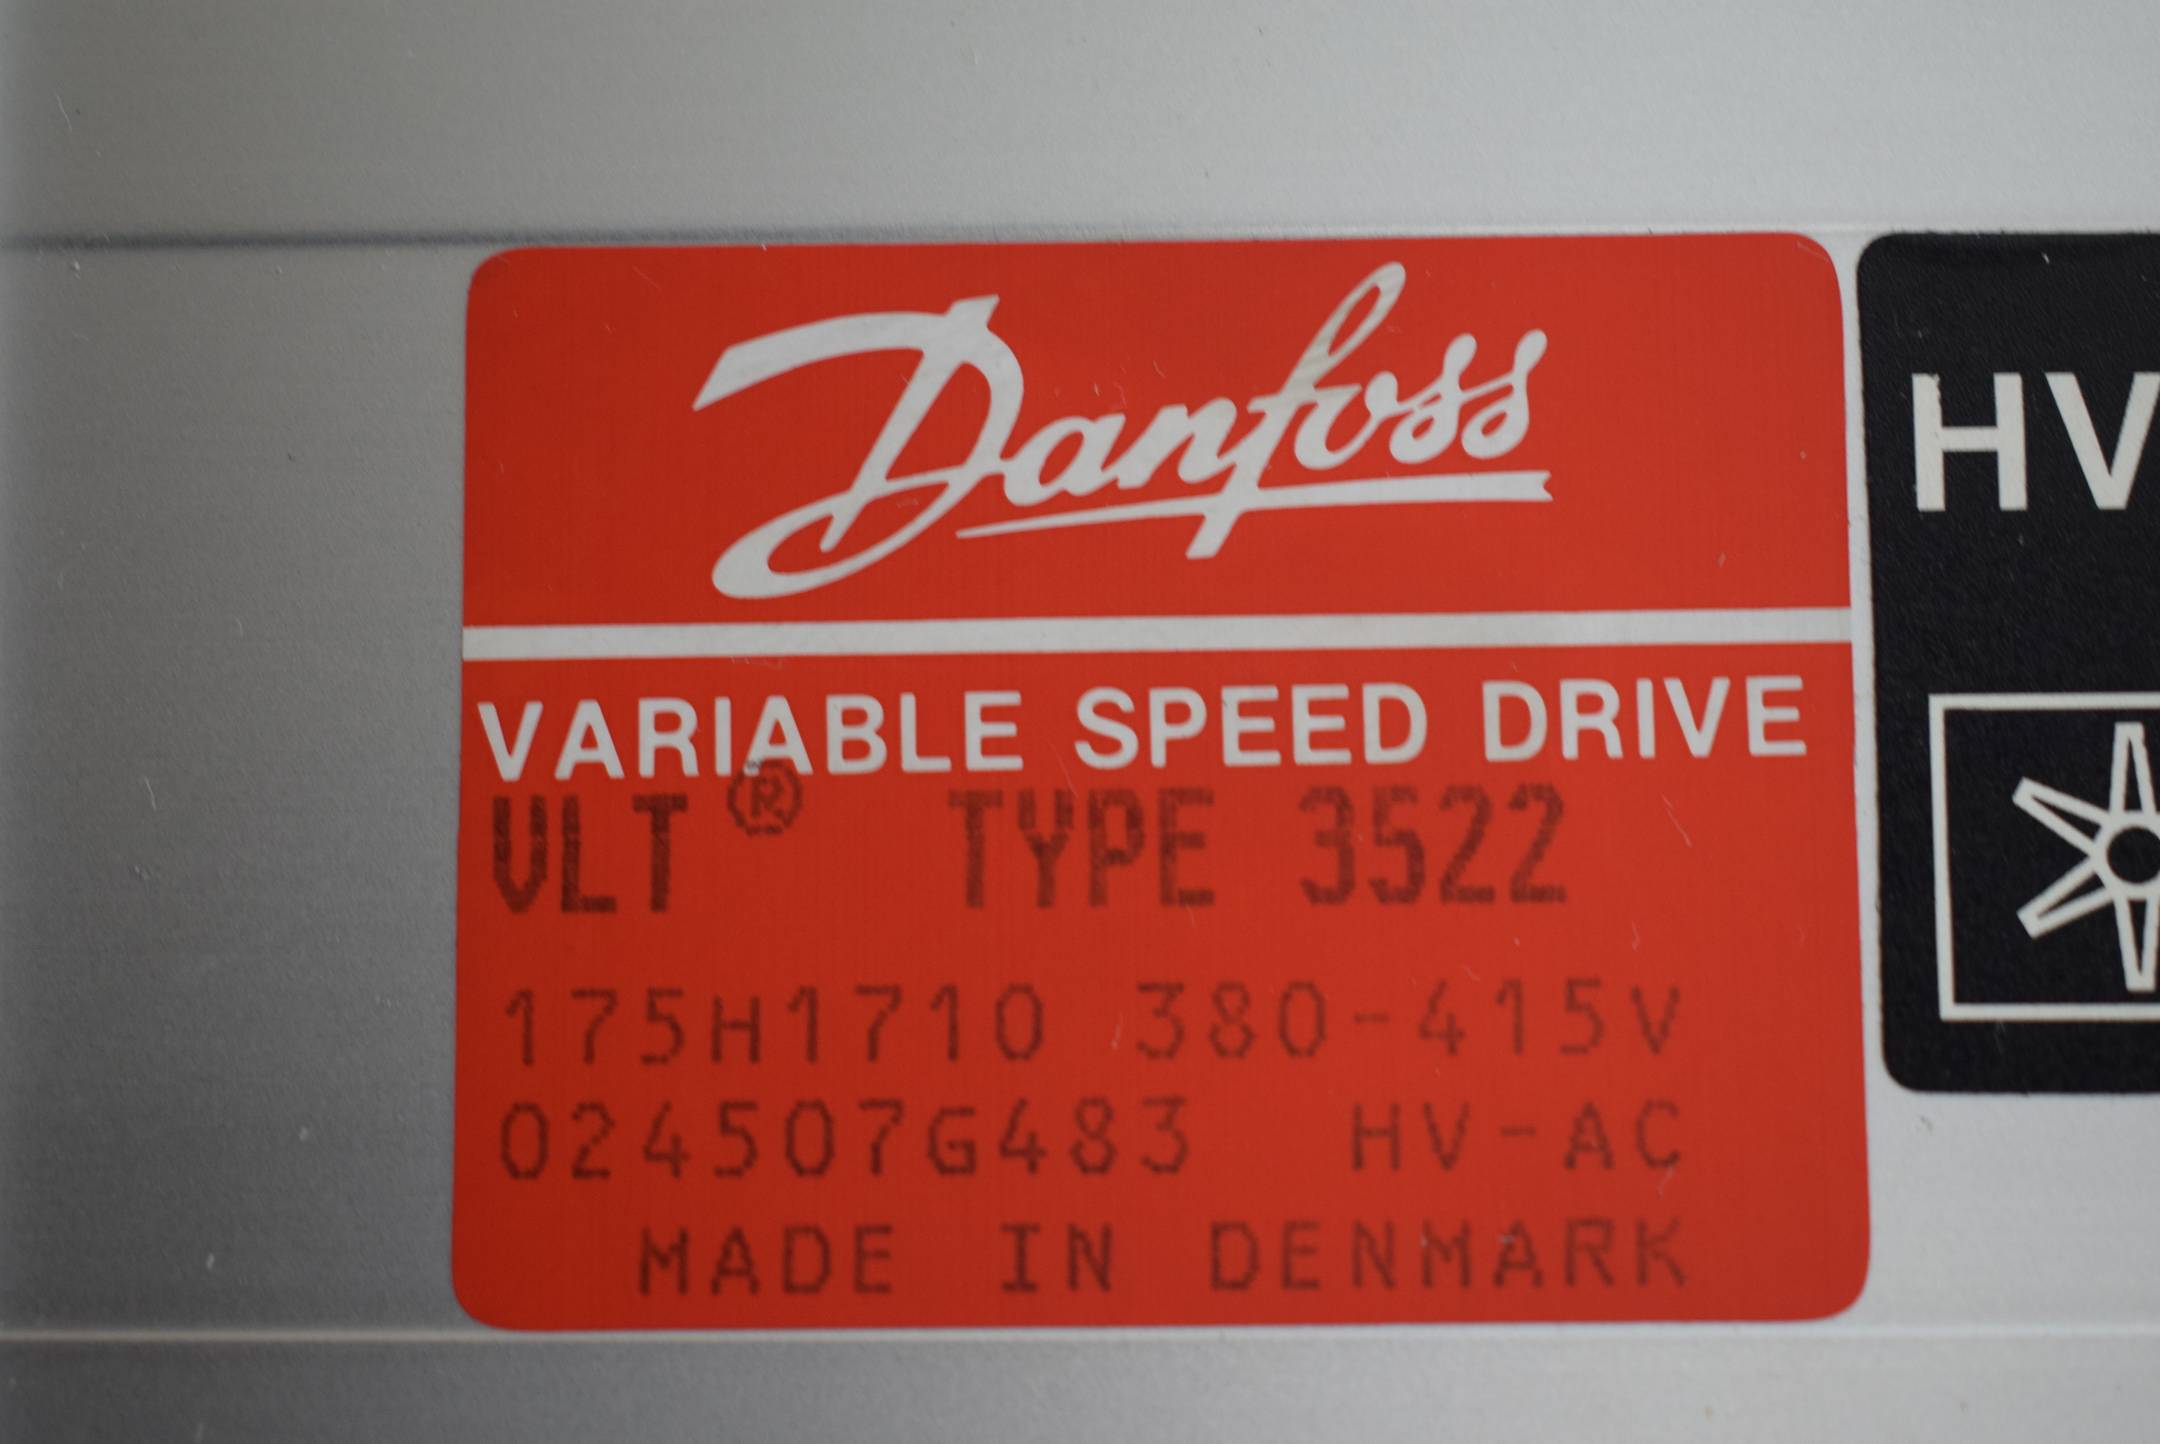 Danfoss VLT Type 3522 Variable Speed Drive Frequenzumrichter 175H1710 380-415V